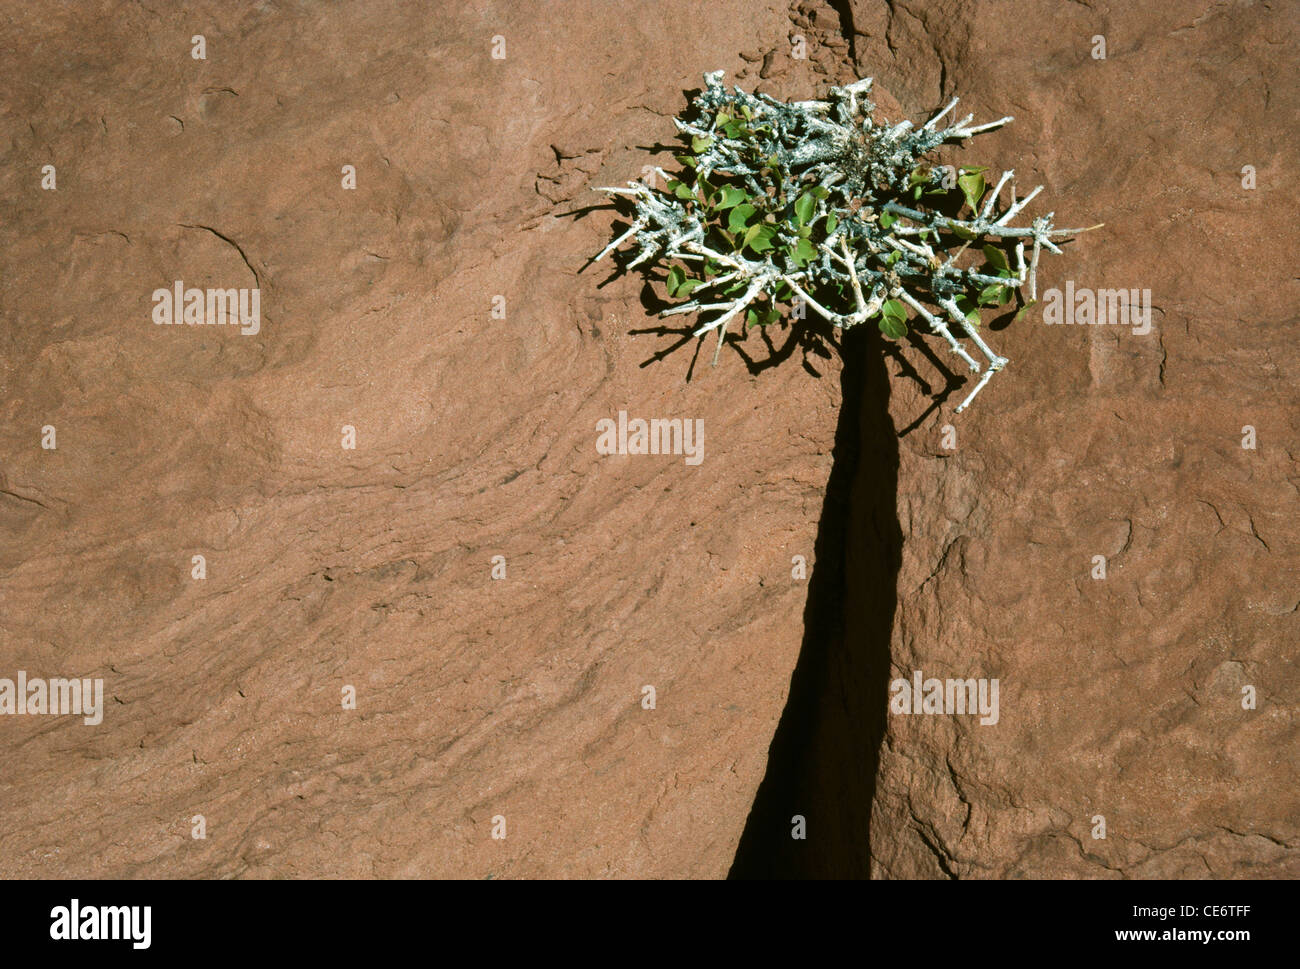 AMA 85939: Natur abstrakte Pflanze wächst in Riss Rock zu schauen, wie palm-Baum Indien Stockfoto